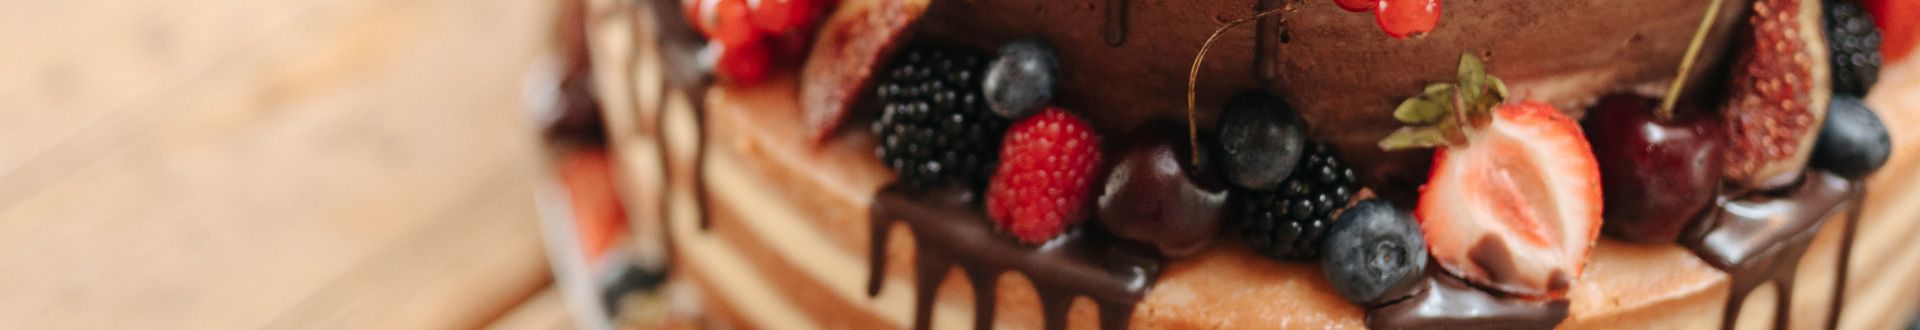 Ciasto z owocami polane czekoladą